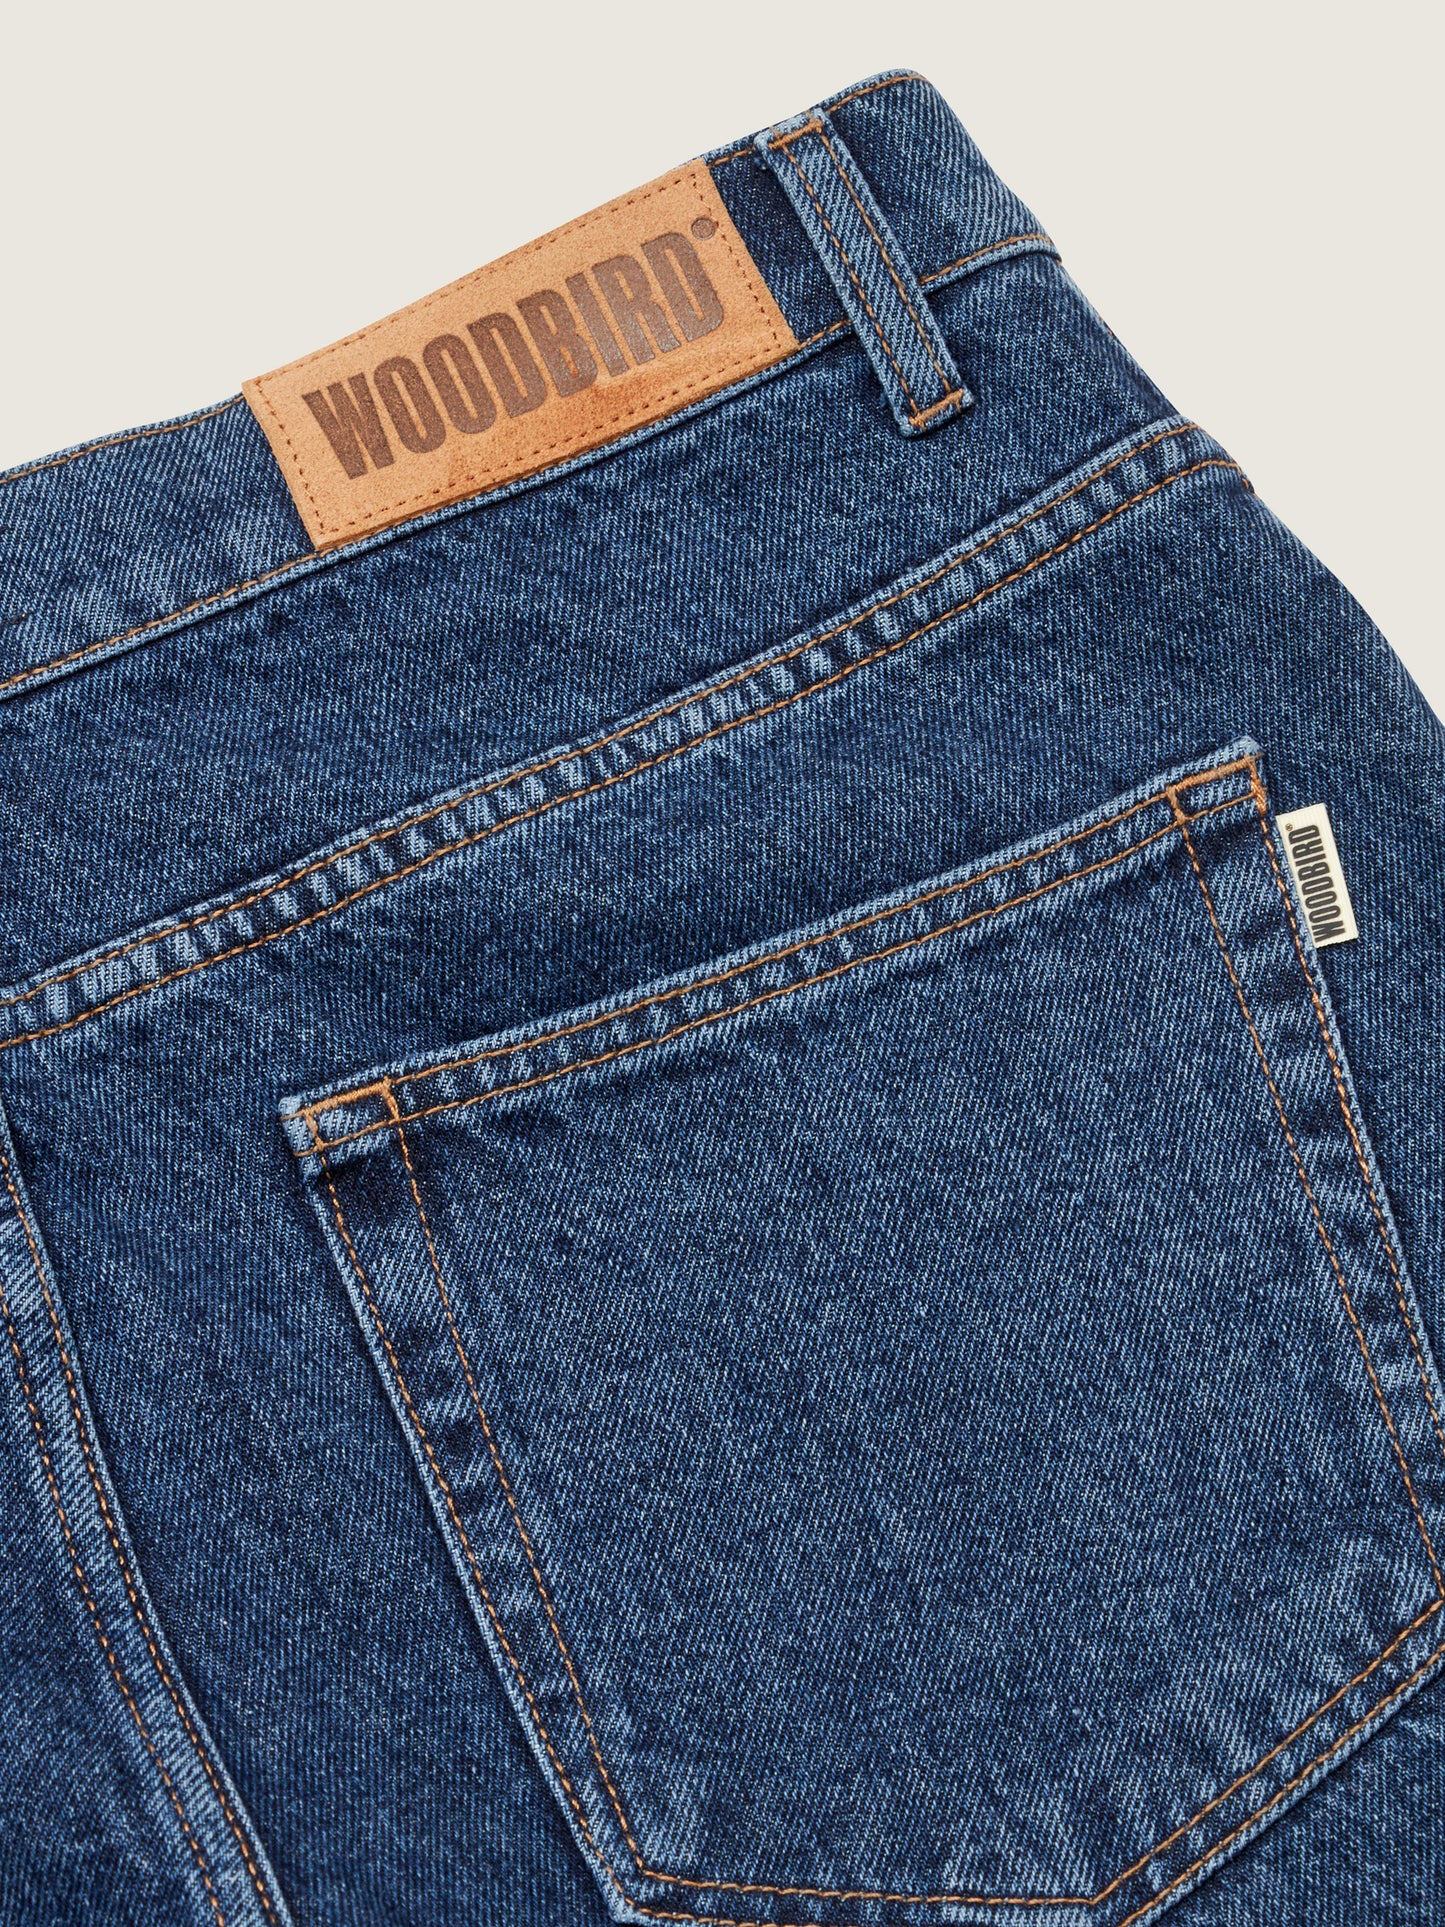 Woodbird WBLeroy 90s Rinse Jeans Jeans 90s Blue